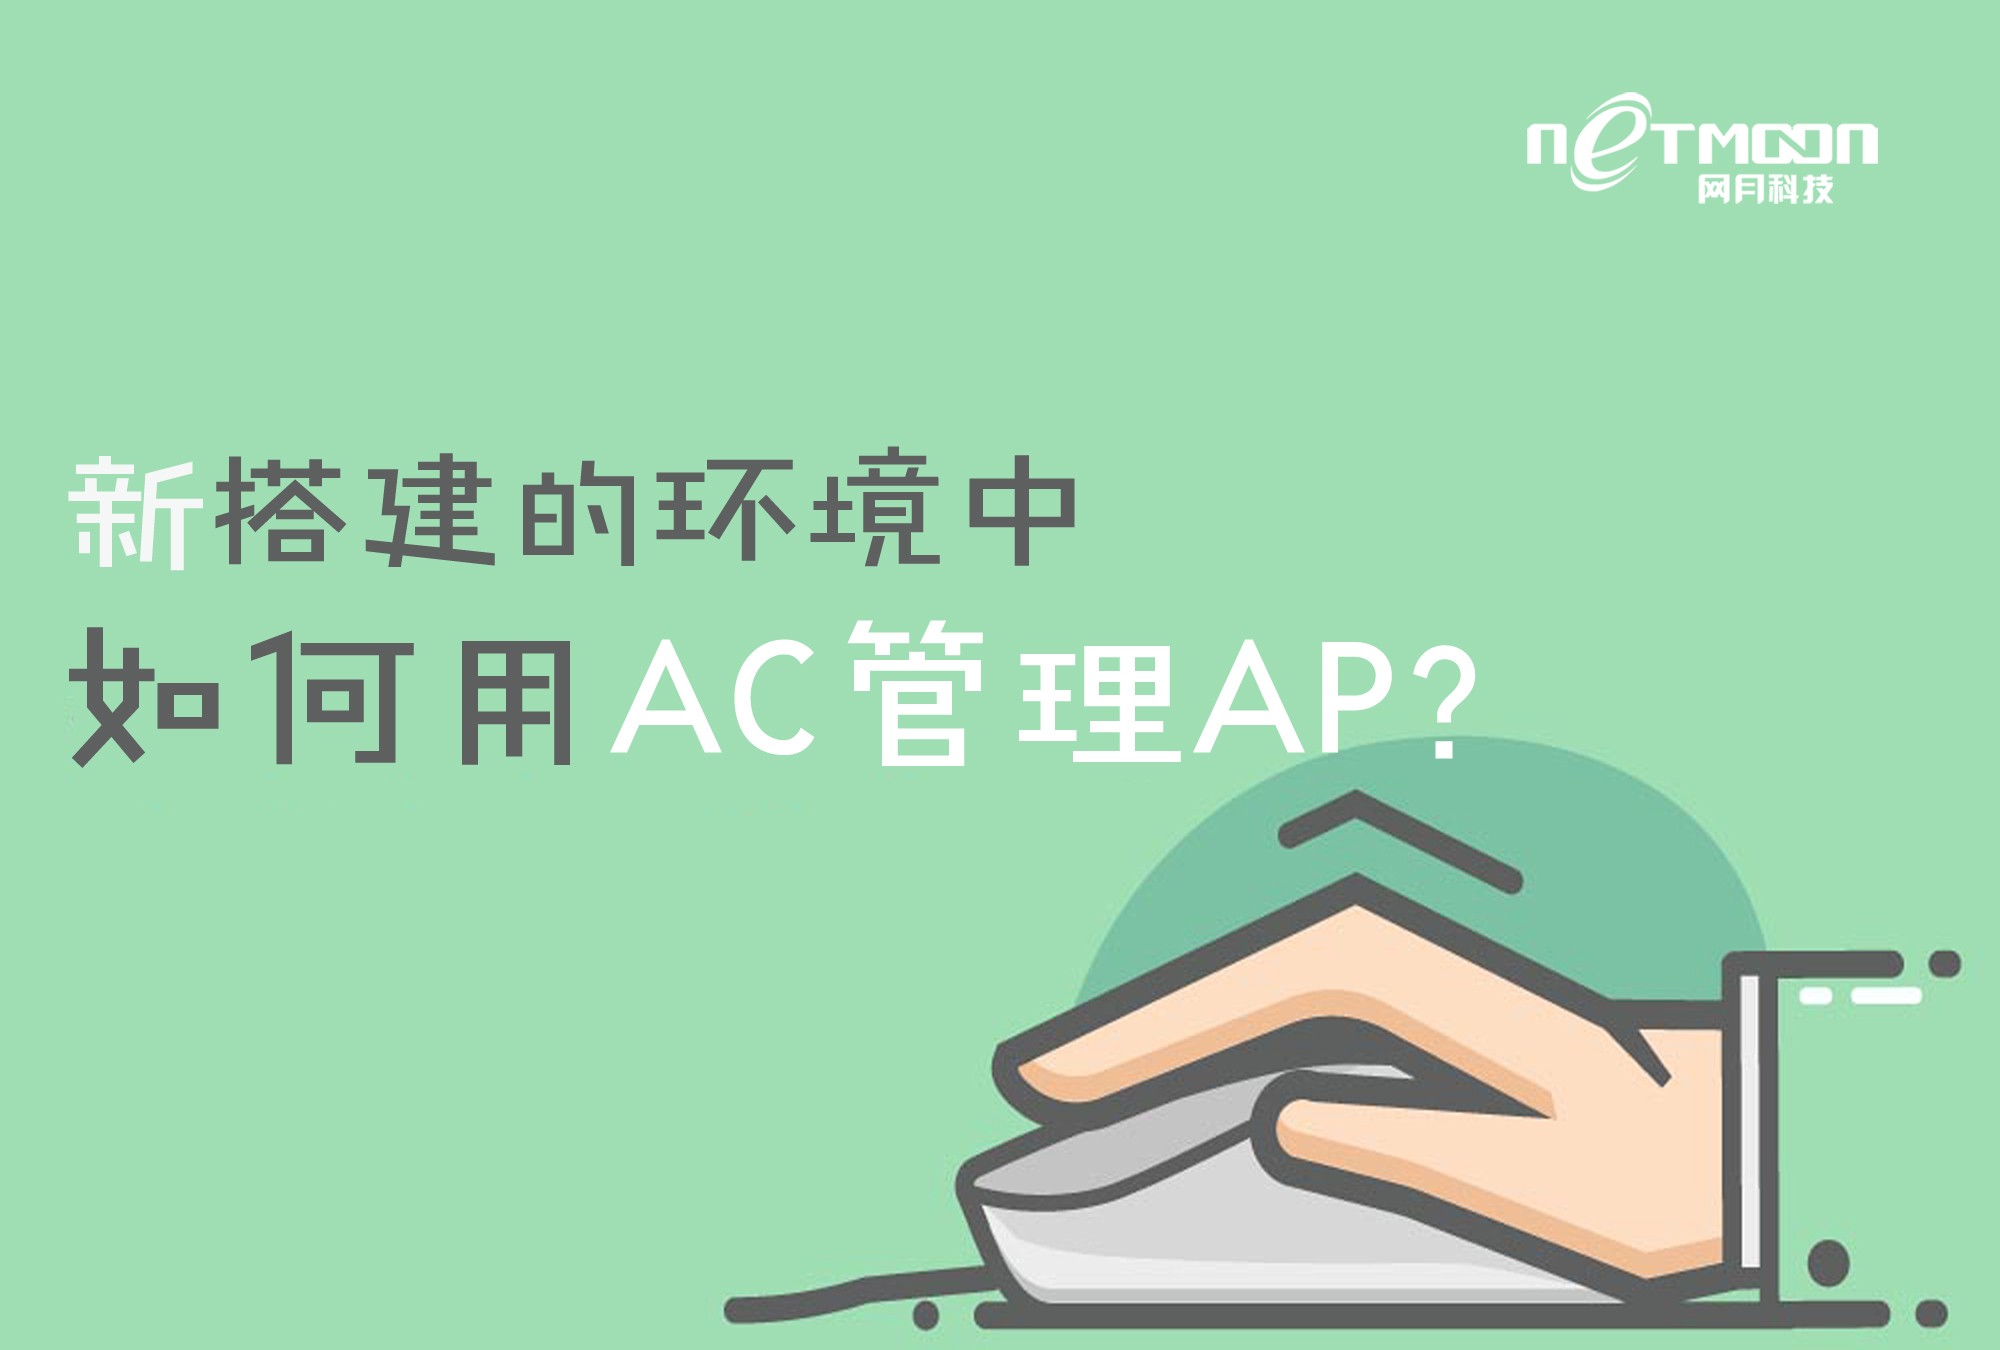 网月科技-新搭建的环境中如何用AC管理AP？